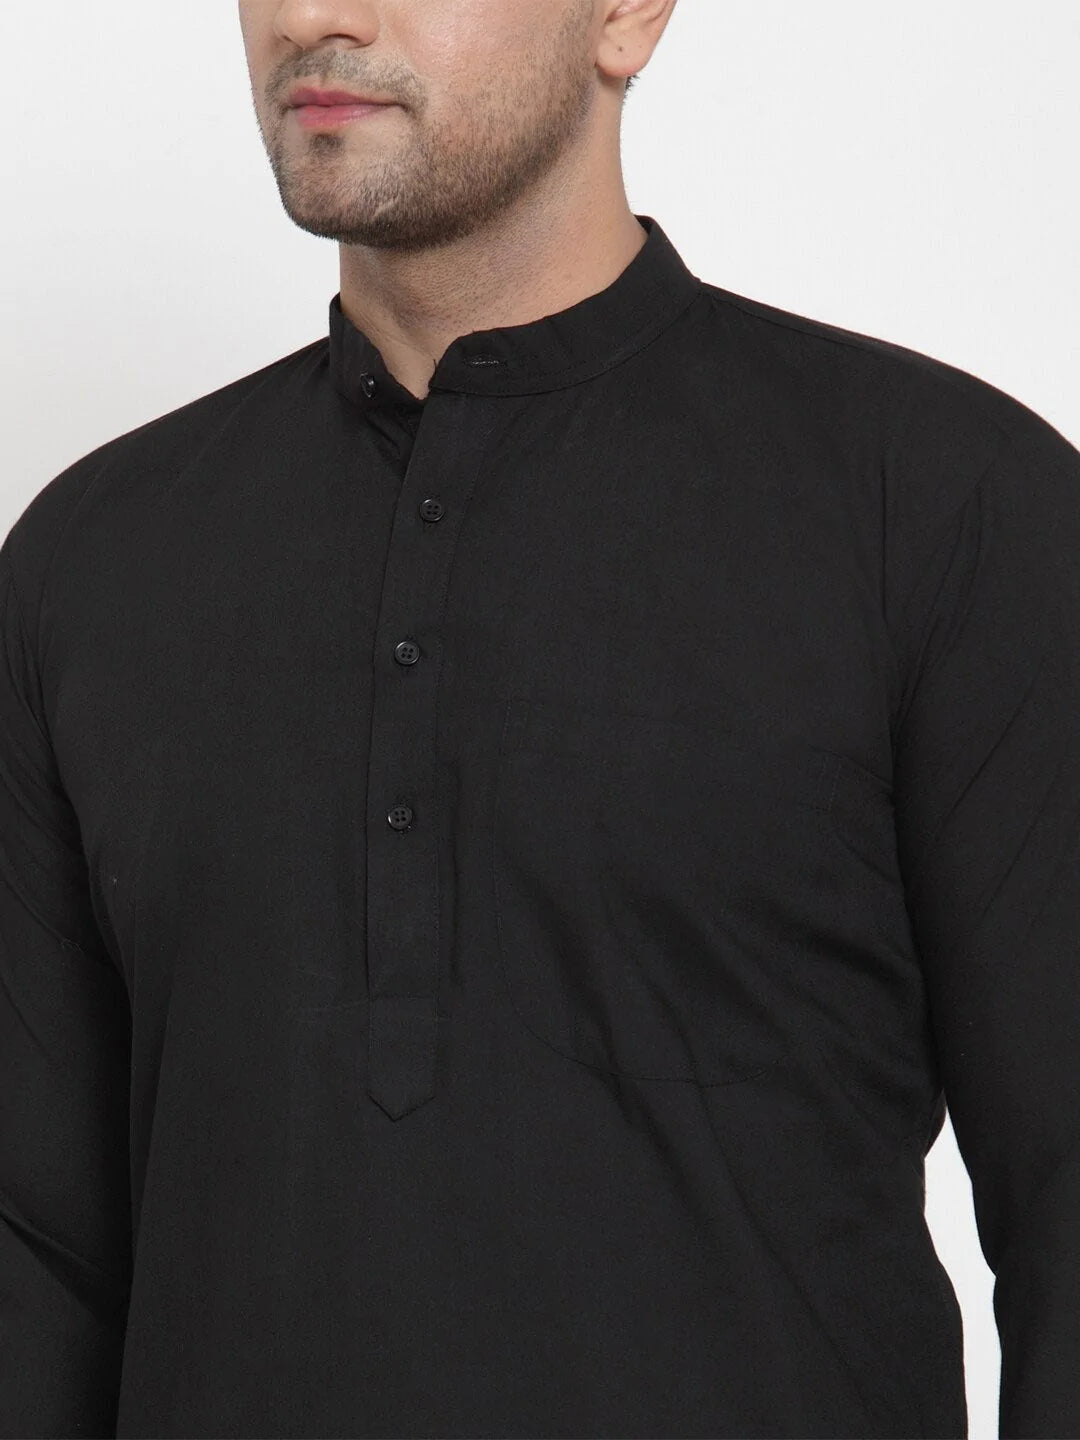 Jompers Men's Black Cotton Solid Kurta Payjama Sets ( JOKP 611 Black )